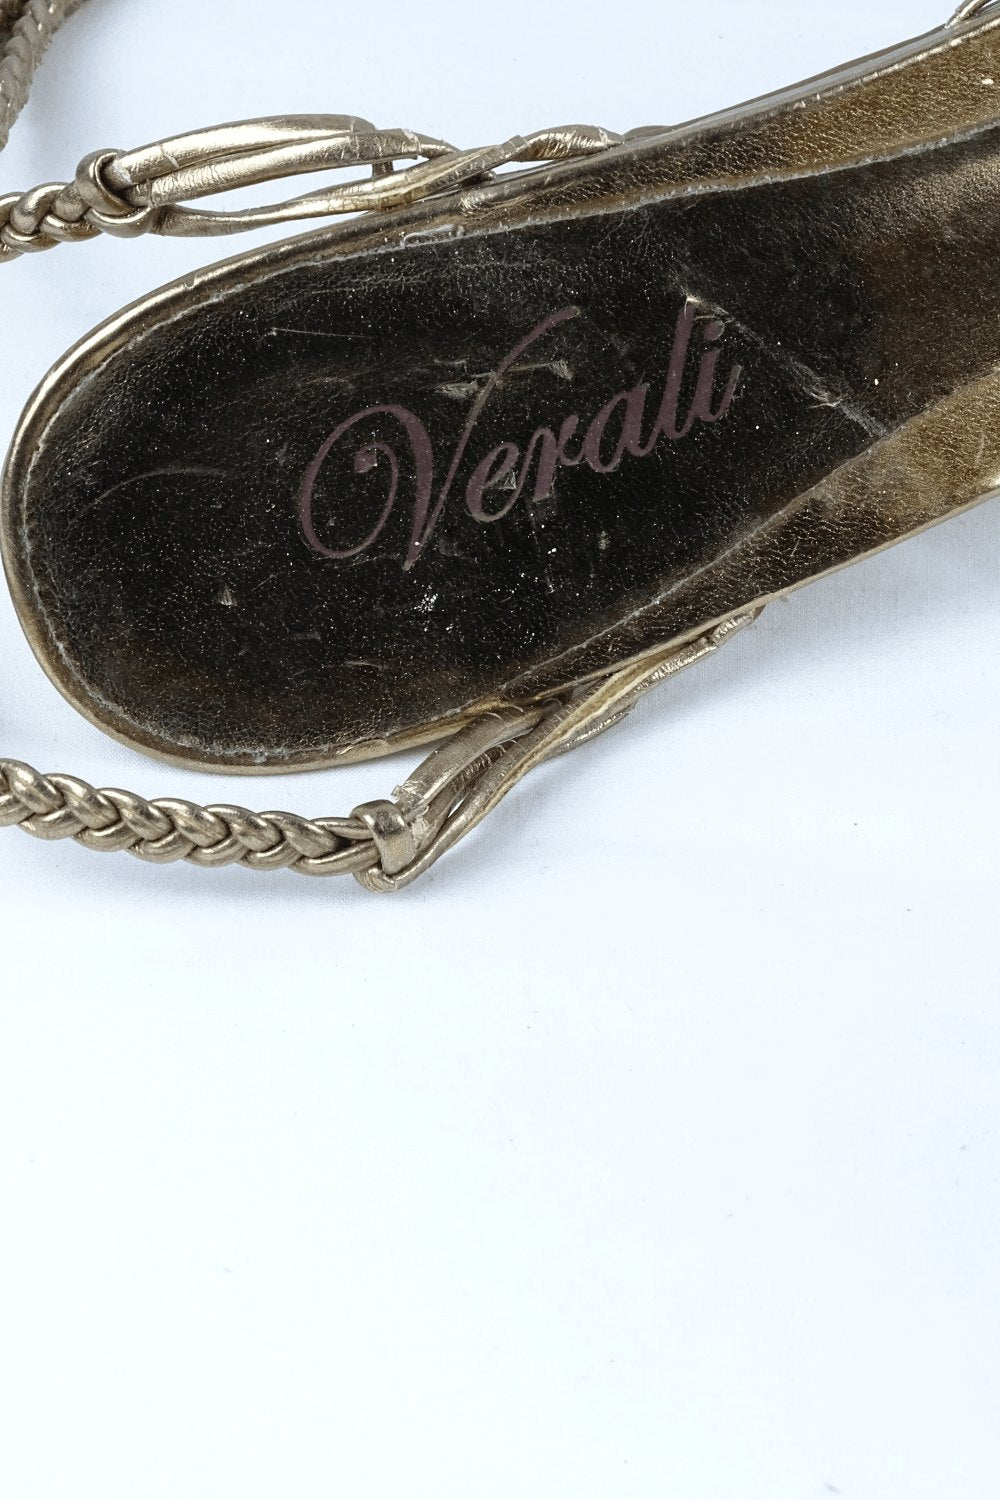 Verali Bronze Heeled Sandals 9